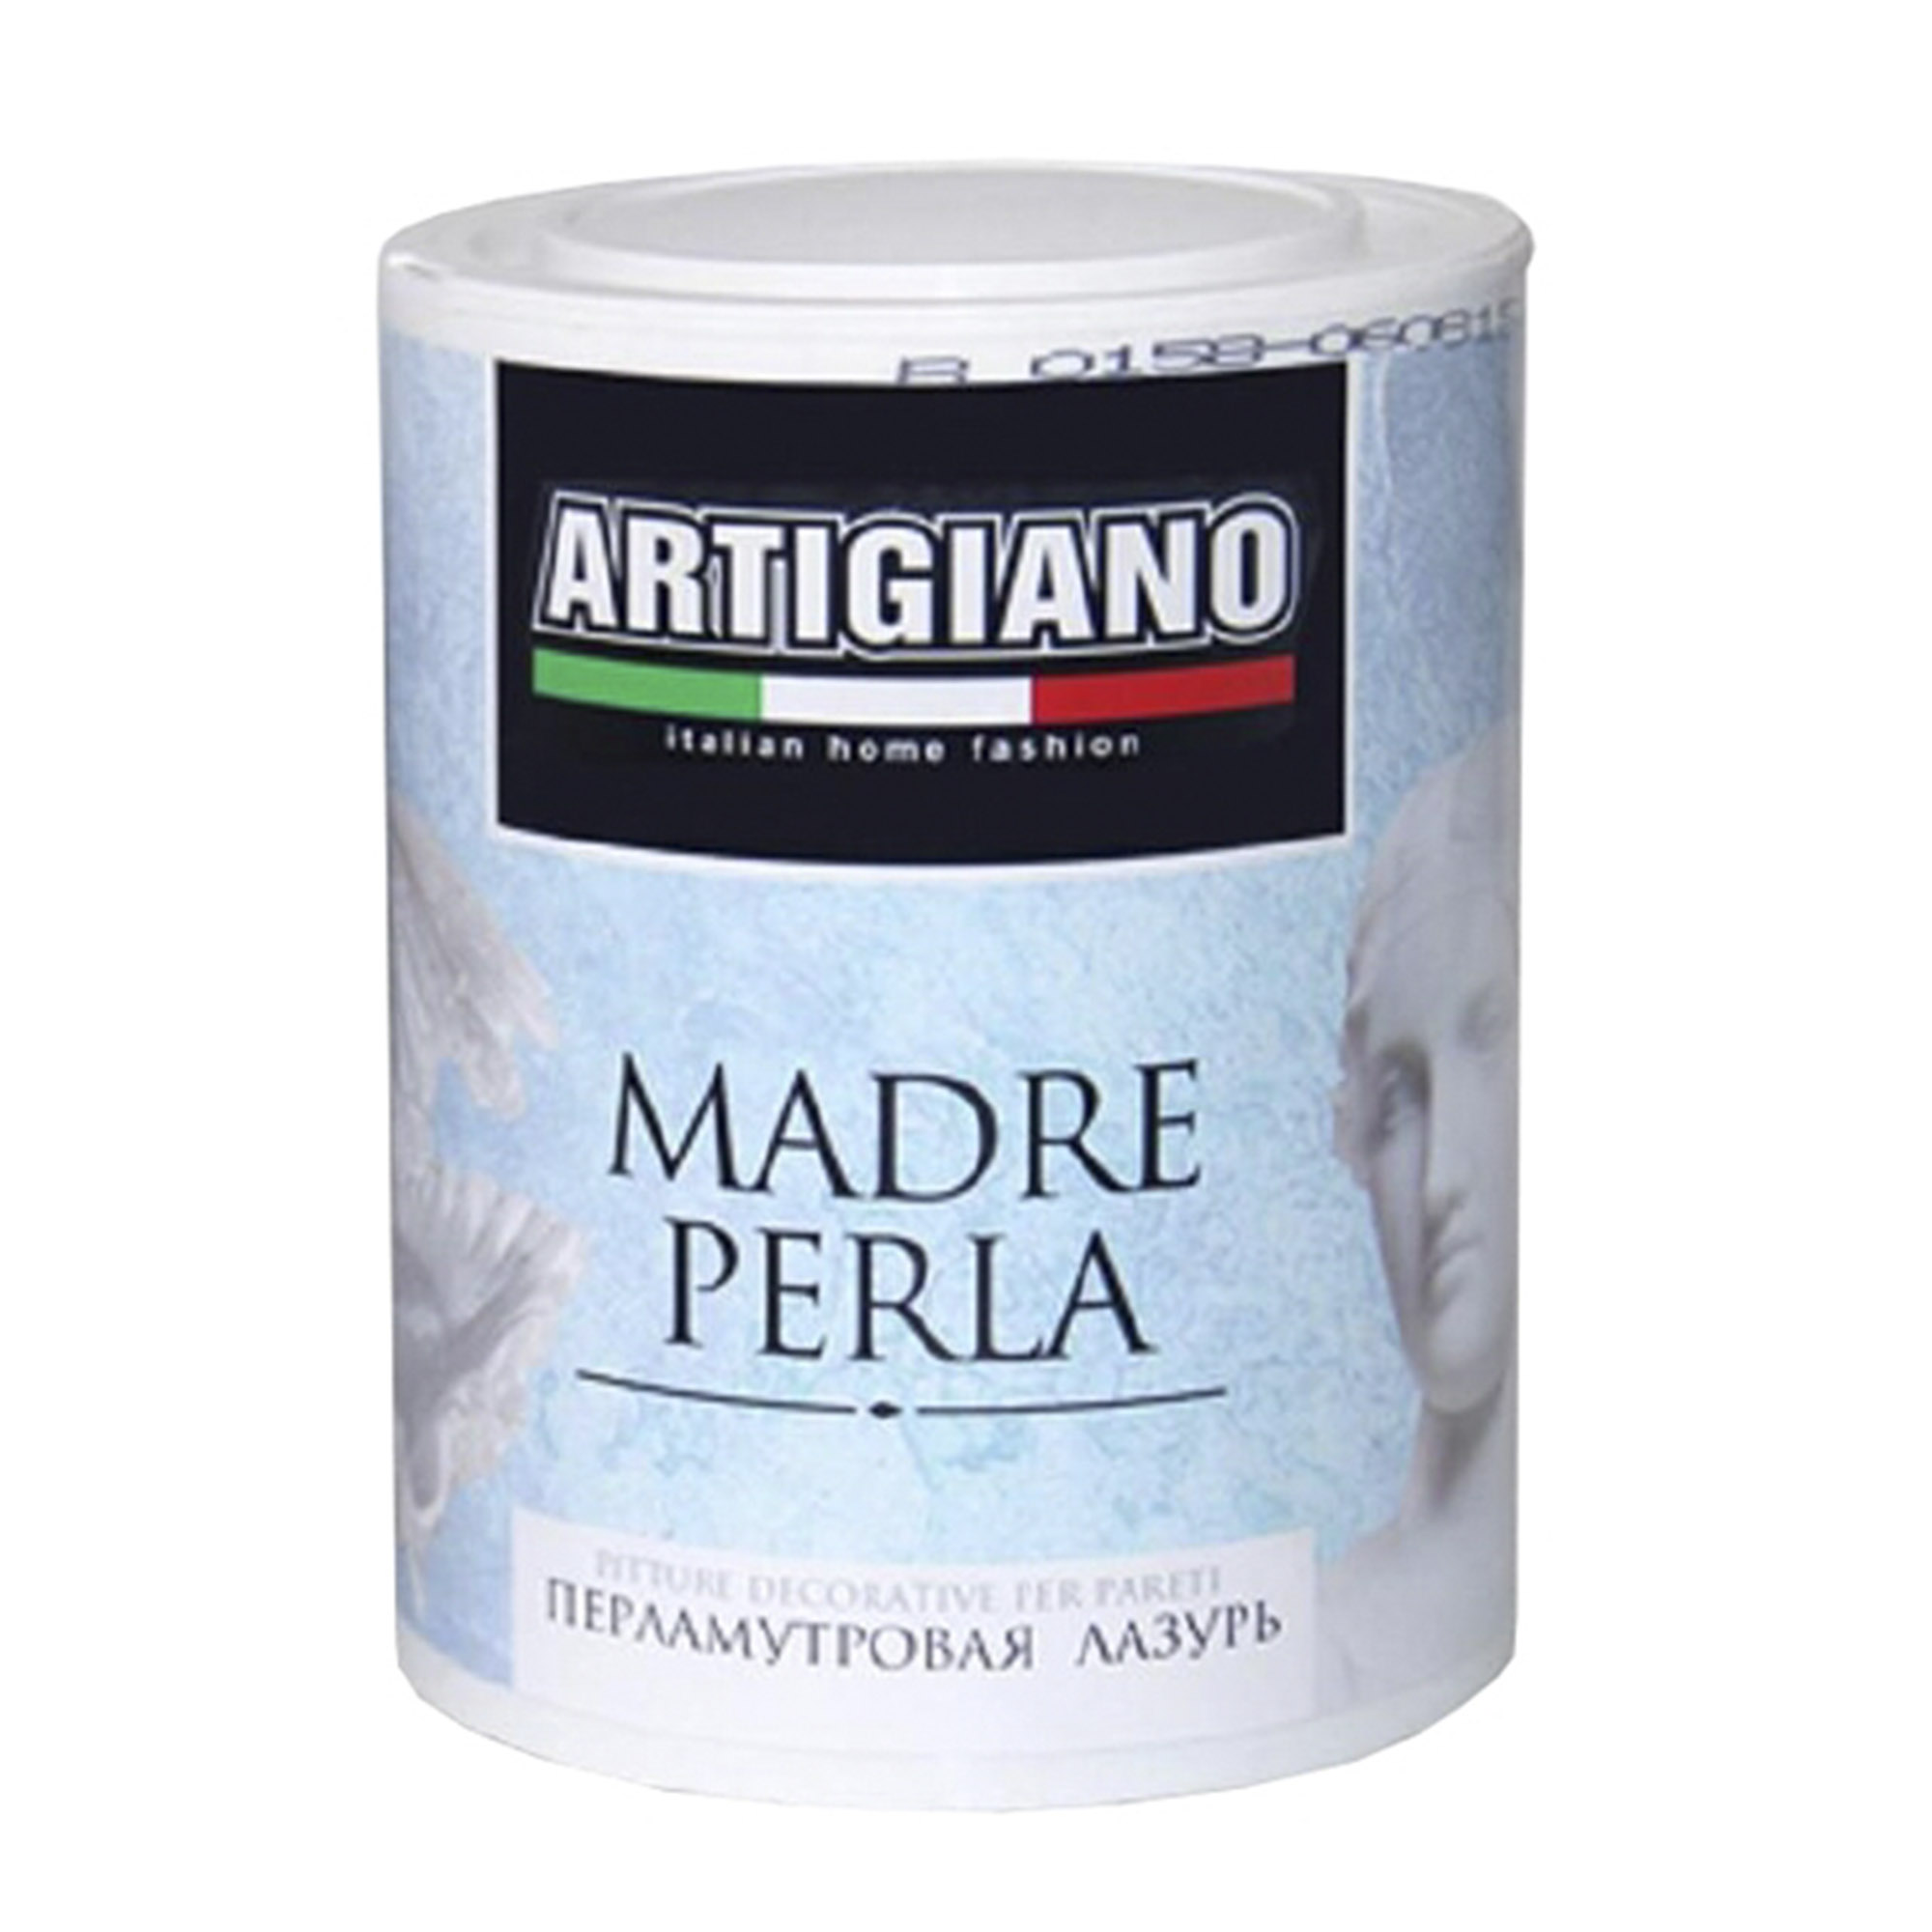 Лазурь декоративная Artigiano Madre Perla 1 л лазурь декоративная с антисептиком organa coloured varnish цвет карамель 1 кг